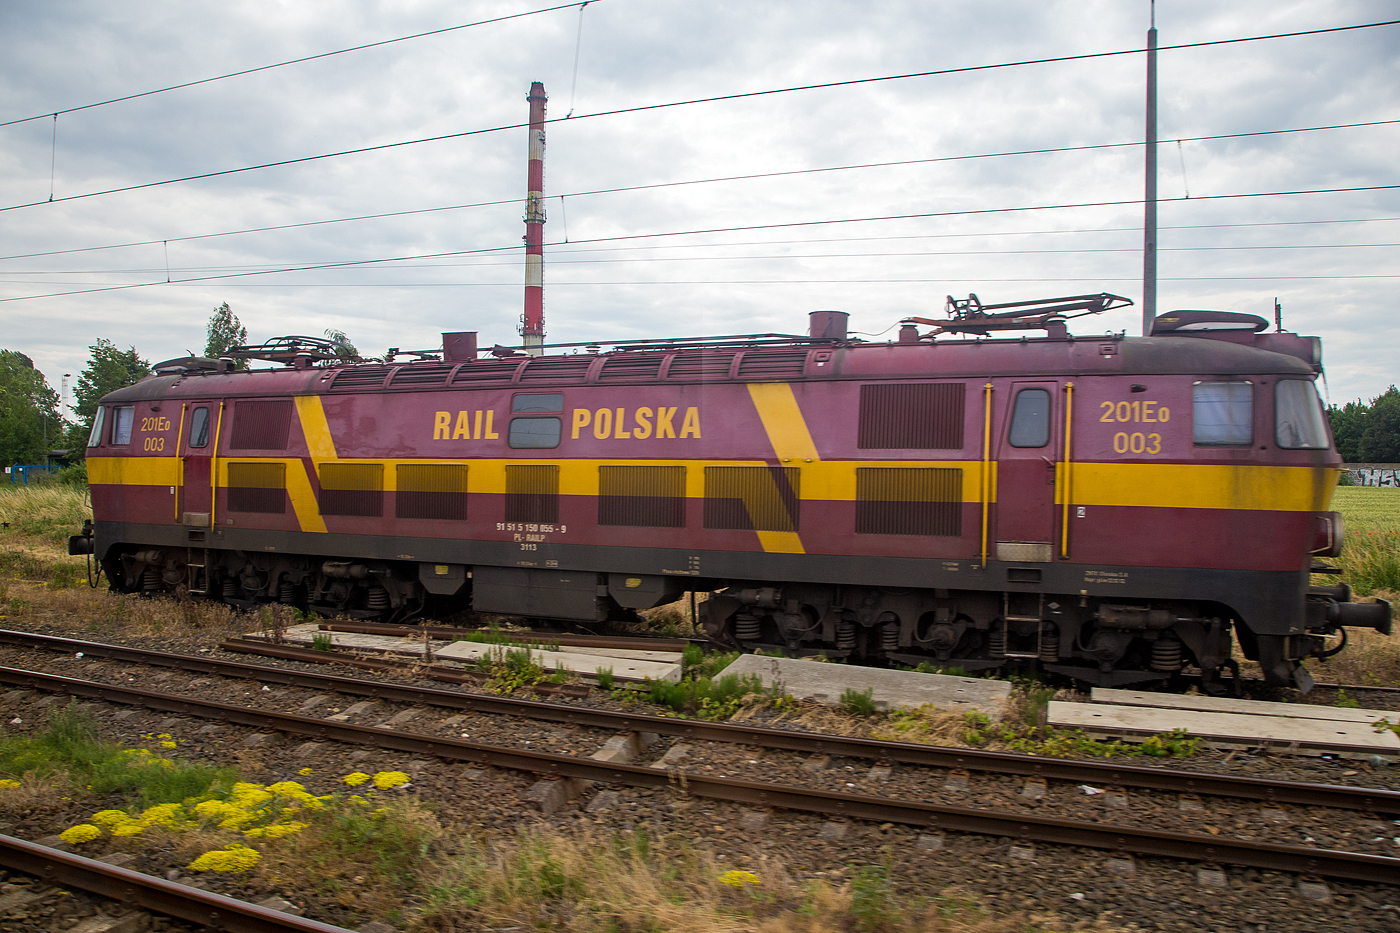 Aus einem Zug heraus, sechsachsige 201Eo 003 (91 51 5 150 055-9 PL-RAILP) der Rail Polska Sp. z o.o., ex ONCF E 1016, steht am 25 Juni 2017 bei Kołodziejewo.

1975/76 wurden 23 Lokomotiven der Bauart vom Typ Pafawag 201Eg nach Marokko exportiert. Die klimatischen Verhltnisse verlangen einige Anpassungen. Der Lokomotivkasten wurde aus rostfreiem Stahl hergestellt, zudem war er wegen grerem Lichtraumprofil auch grer ausgefhrt. Bei der staatliche marokkanische Bahn (ONCF - Office National des Chemins de Fer) wurden sie als Baureihe E 1000 (1001-1023) eingereiht. 

Von diesen Loks gelangten 11 Stck ab 2003 wieder zurck nach Polen. Die ehemaligen Marokko-Loks erkennt man auer an dem greren Lokkasten auch an der anderen Nummerierung (UIC 5 150 anstelle der 3 davor), die sechs Lokomotiven an Rail Polska wurden als 201Eo-001 bis 006 bezeichnet.

TECHNISCHE DATEN der ONCF Loks:
Gebaute Stckzahl: 23
Baujahre: 1975/76
Spurweite: 1.435 mm
Achsfolge: Co’Co’
Lnge ber Puffer:19.240 mm
Drehzapfenabstand: 10.300 mm
Achsabstand im Drehgestell: 2x 1.750 mm (3.500 mm)
Triebraddurchmesser: 1.250 mm
Dienstgewicht: 120 t
Fahrmotoren 6 Stck vom Typ EE541b
Stundenleistung: 3.120 kW
Dauerleistung: 3.000 kW
Anfahrzugkraft: 412 kN
Dauerzugkraft: 212 kN
Hchstgeschwindigkeit: 125 km/h
bersetzung: 1 : 4,3889
Stromsystem: 3 kV DC (=)
Bremsanlage: Oerlikon
